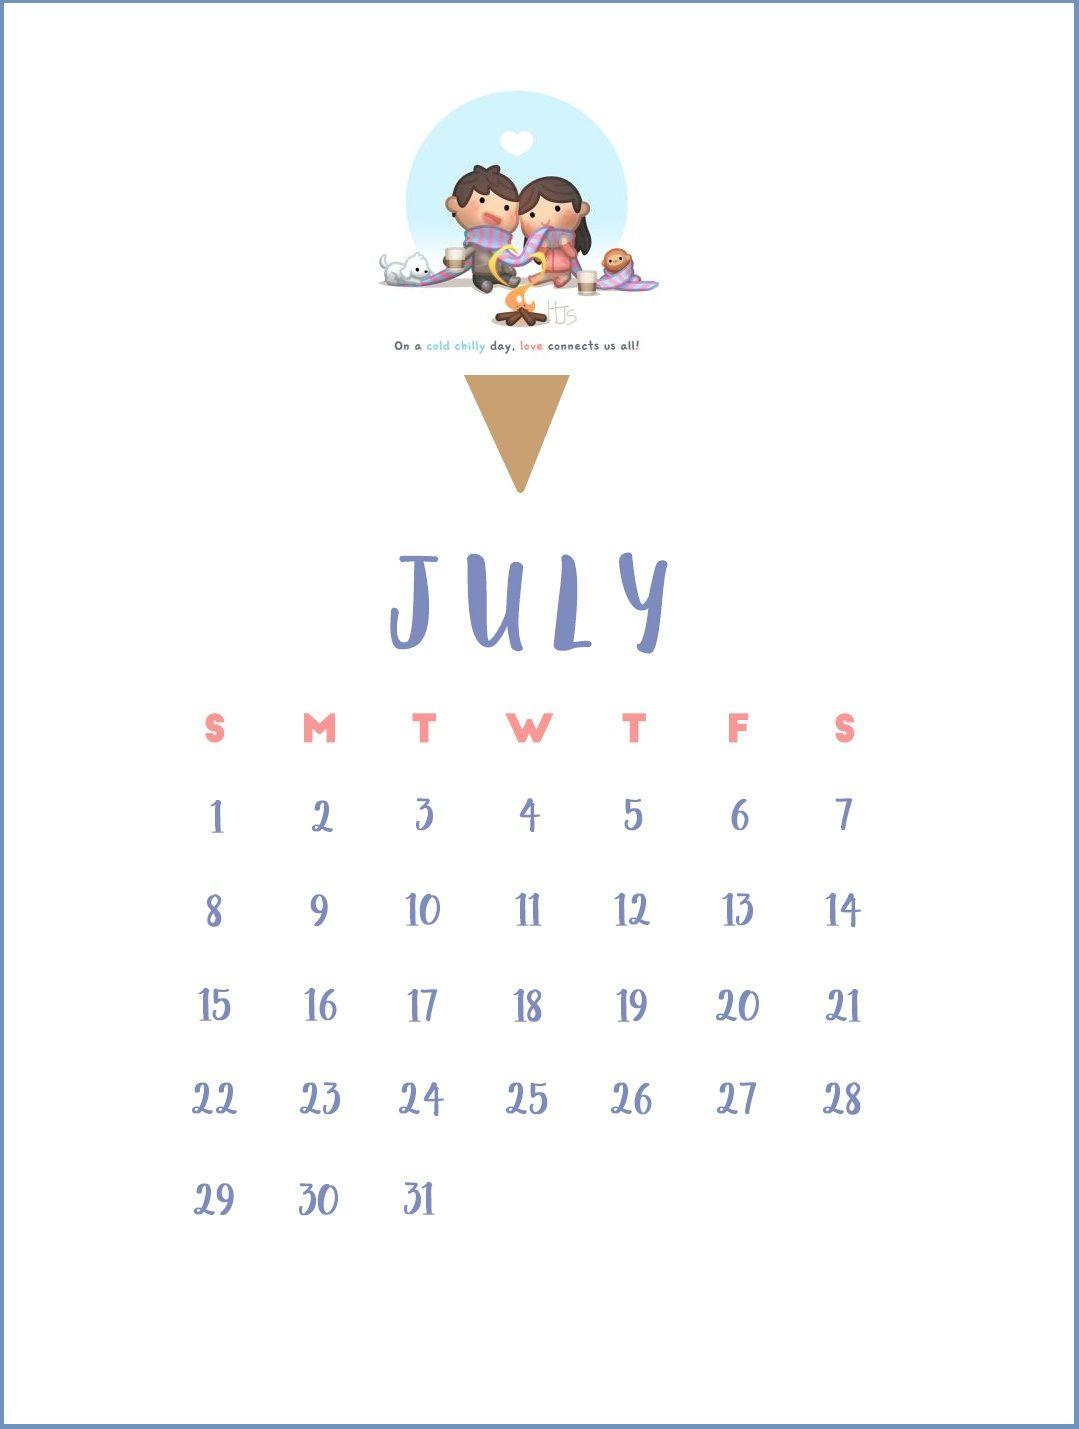 July 2018 Calendar Wallpaper